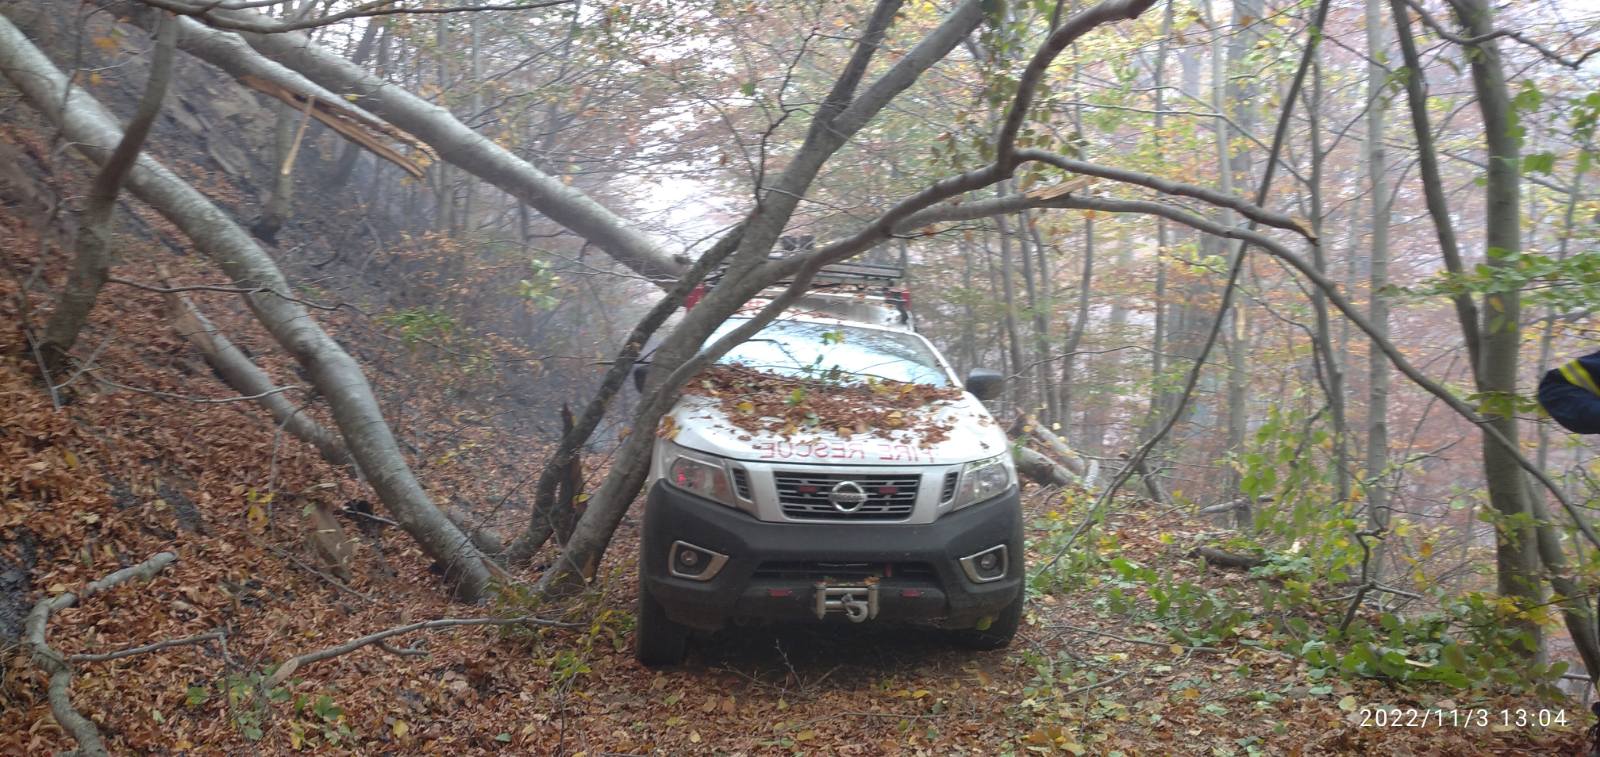 Παπίκιο Όρος: Δέντρα καταπλάκωσαν όχημα – Σώθηκε από θαύμα εθελοντής